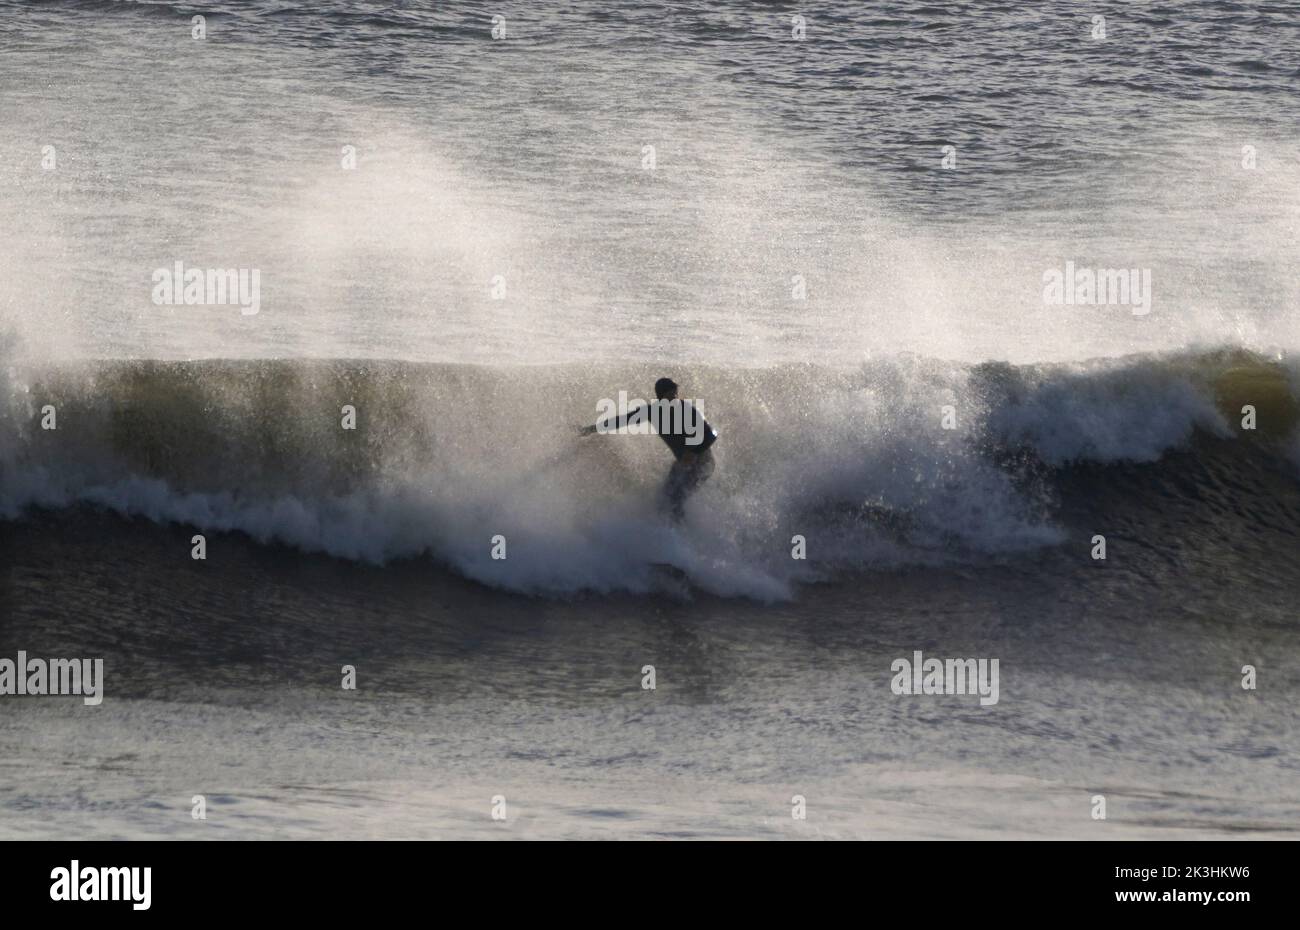 Un surfeur qui fait une vague sur la mer à la plage de Tynemouth sur la côte nord-est. Date de la photo: Mardi 27 septembre 2022. Banque D'Images